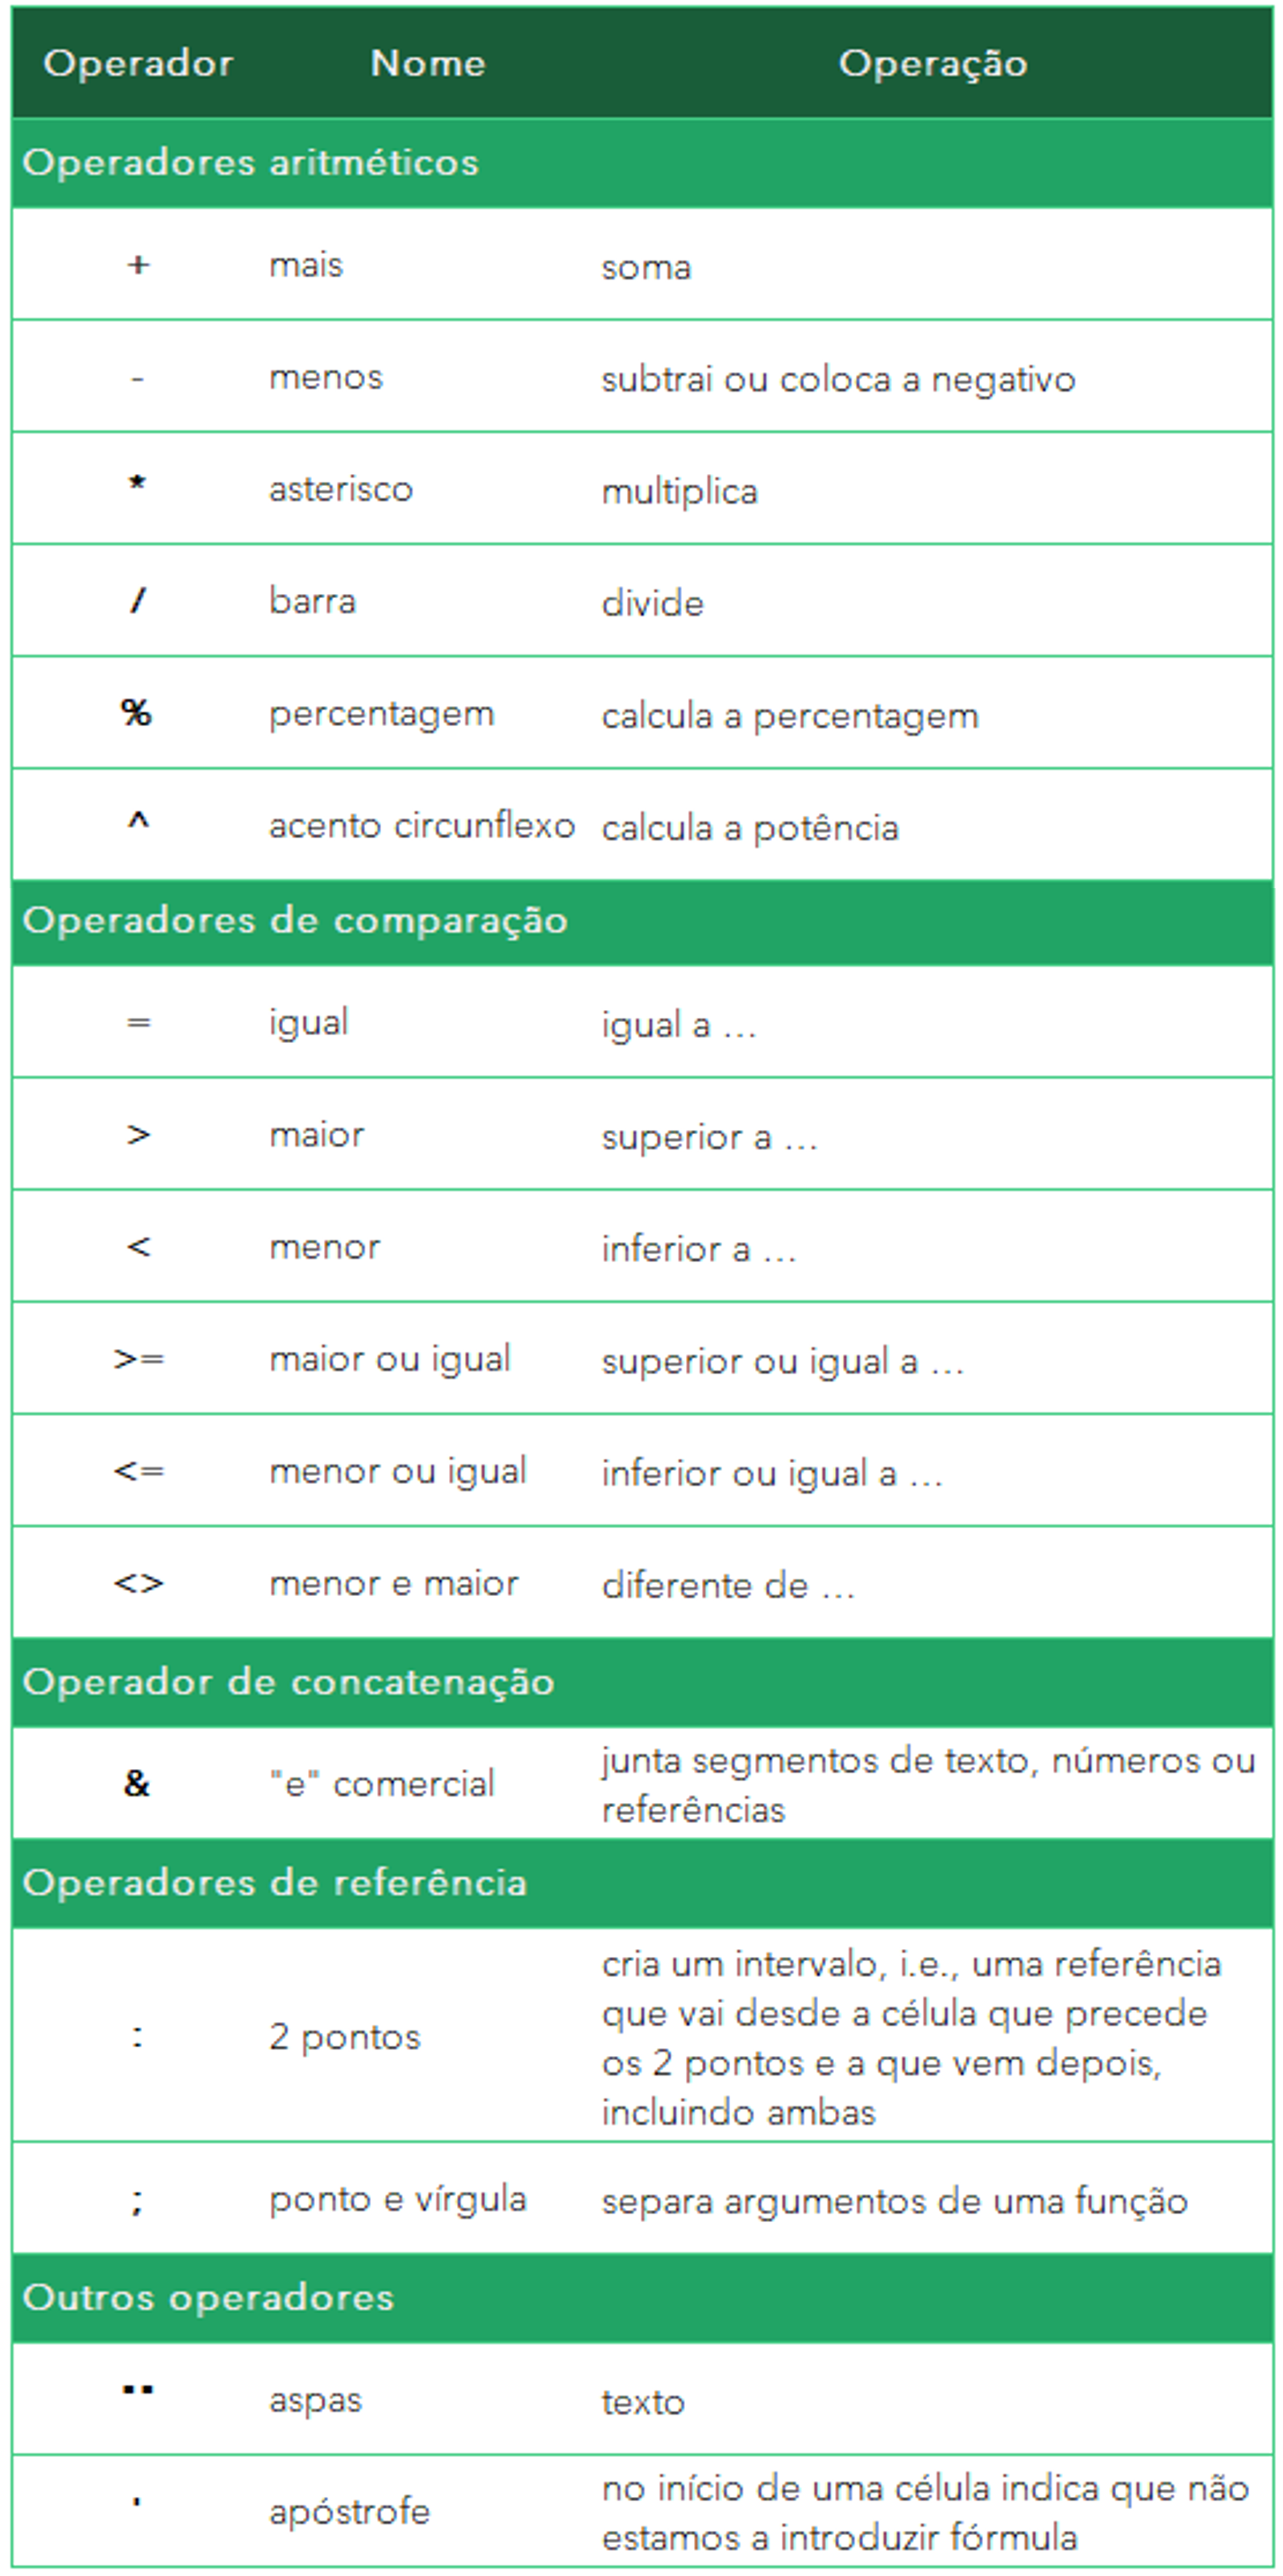 Operadores aritméticos, de comparação, de concatenação, de referência e outros